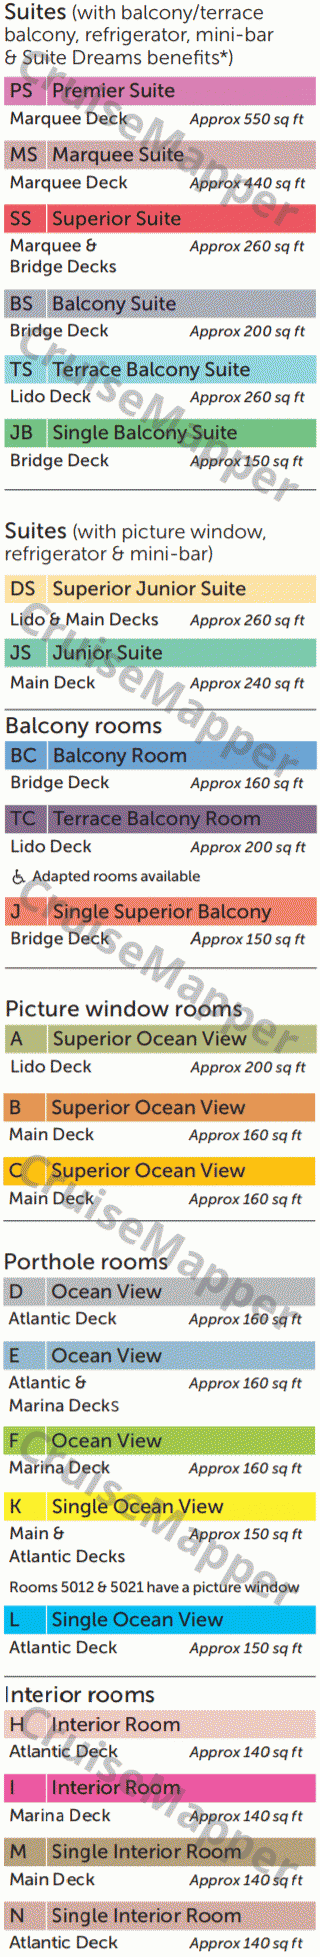 Boudicca deck 6 plan (Lounge-Pools-Dining) legend